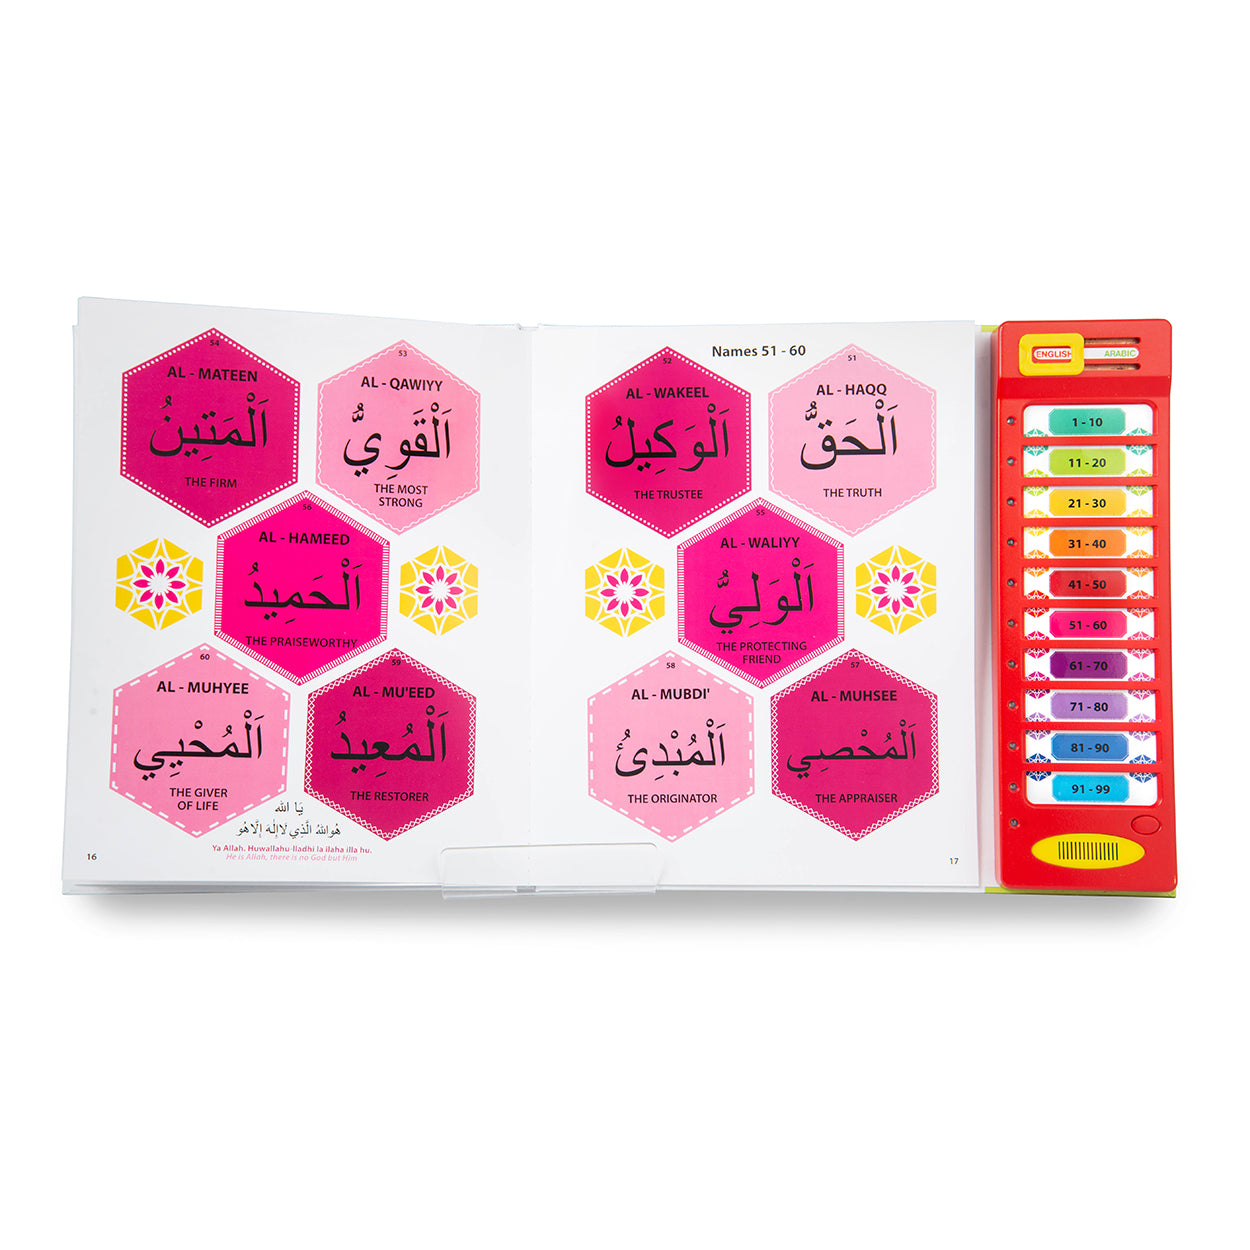 99 Names Of Allah Sound Book - Anafiya Gifts